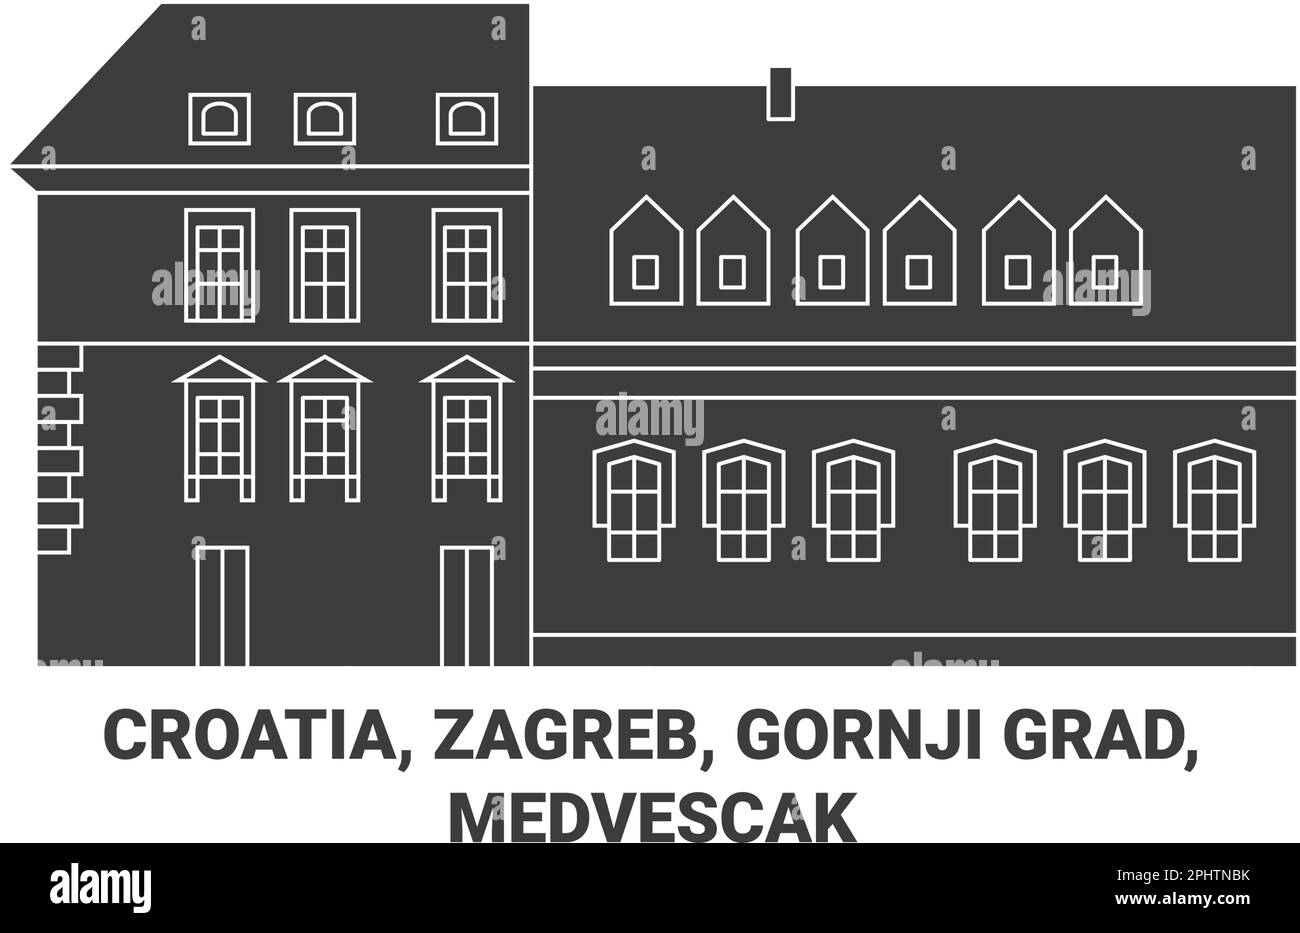 Croatia, Zagreb, Gornji Grad Medvescak travel landmark vector illustration Stock Vector